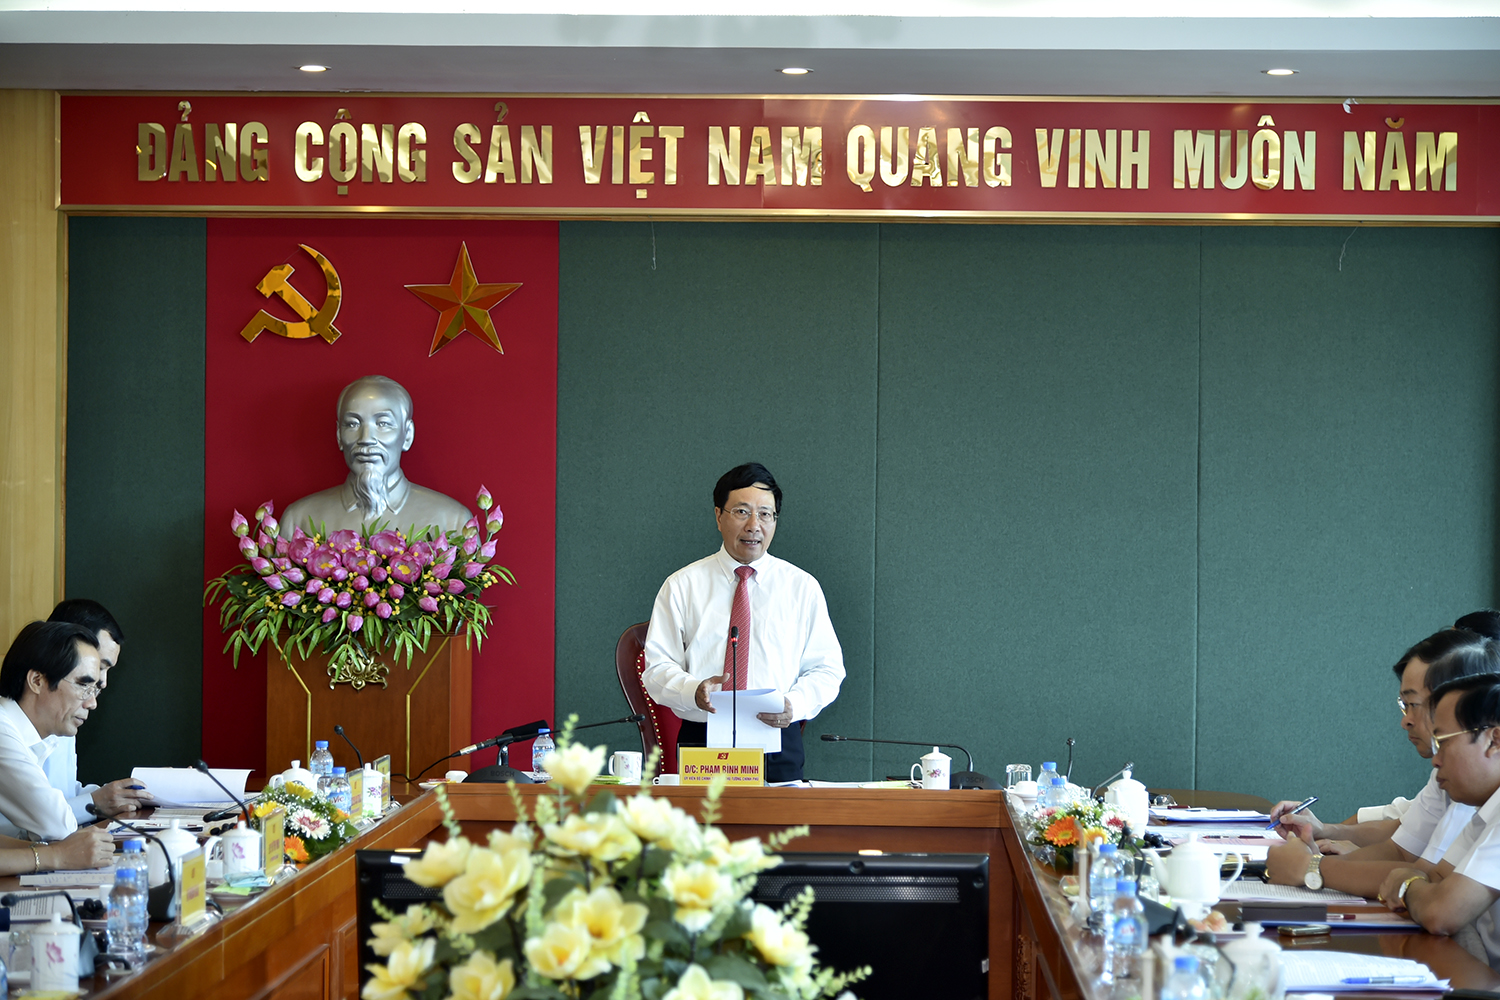 Phó Thủ tướng Phạm Bình Minh làm việc với Ban Thường vụ Tỉnh ủy Thái Nguyên về tình hình phát triển kinh tế-xã hội và công tác đối ngoại trên địa bàn tỉnh. Ảnh: VGP/Hải Minh.